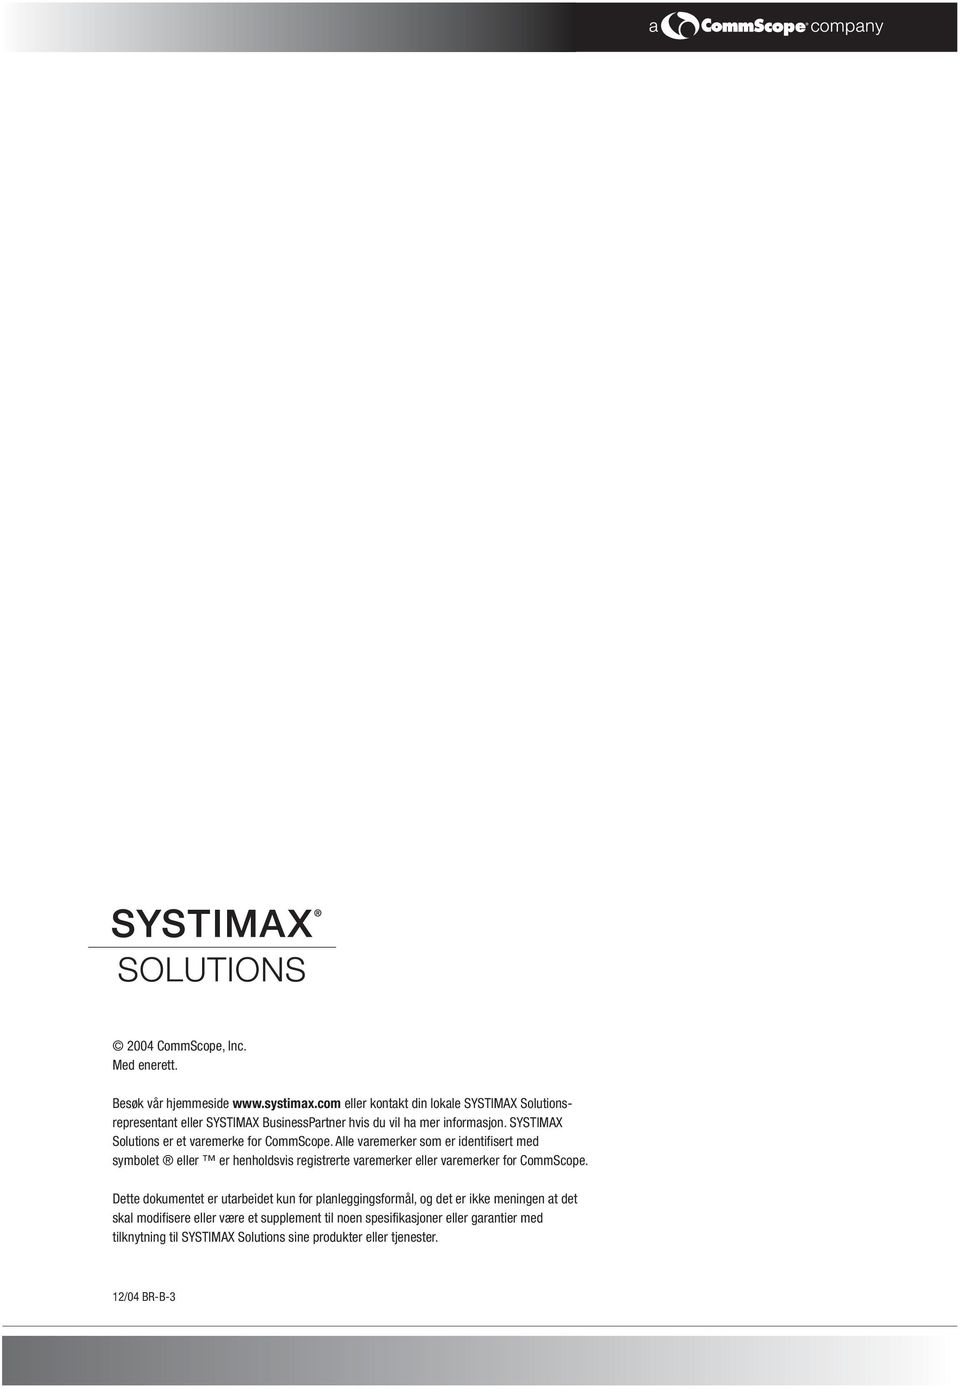 SYSTIMAX Solutions er et varemerke for CommScope.